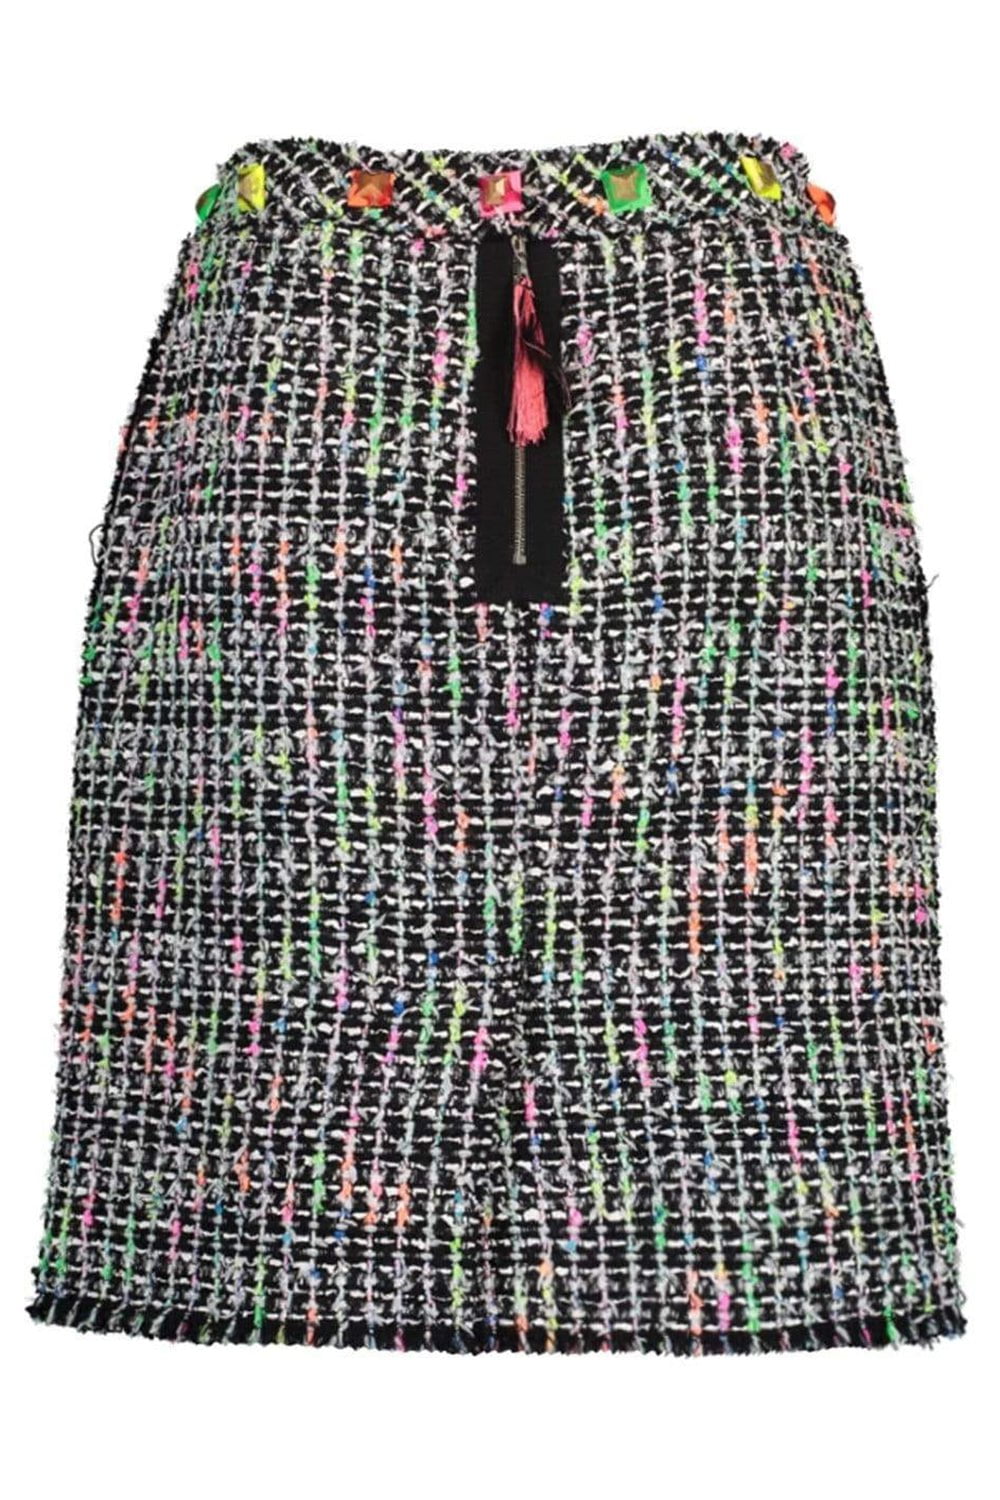 MARC JACOBS-Embroidered Tweed Mini Skirt-BLACK